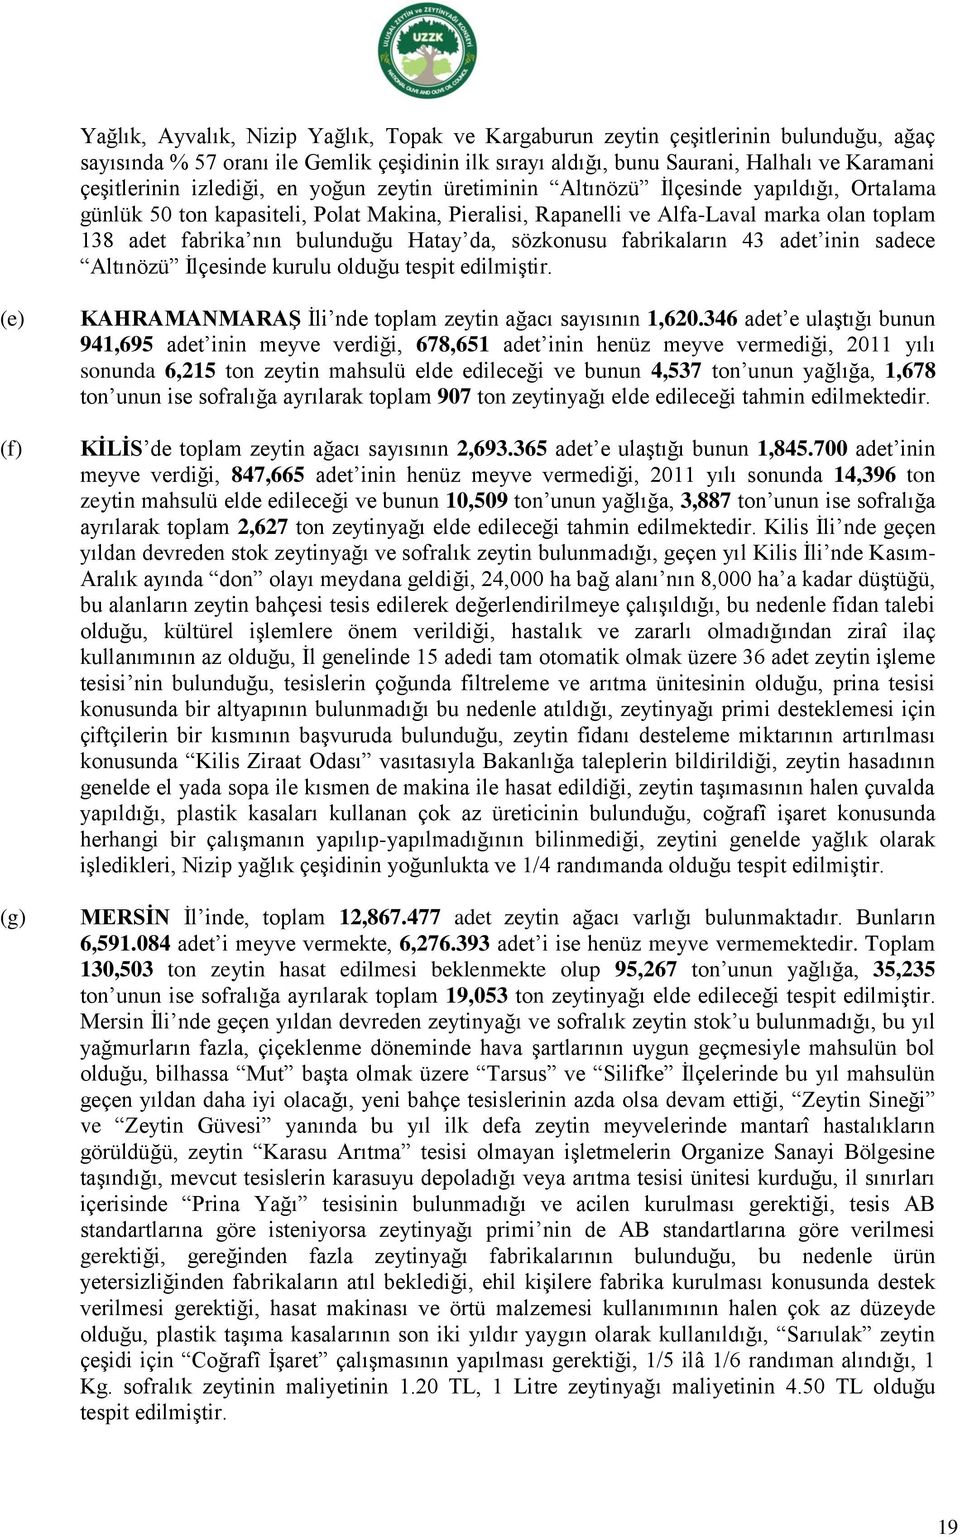 Hatay da, sözkonusu fabrikaların 43 adet inin sadece Altınözü İlçesinde kurulu olduğu tespit edilmiştir. (e) (f) (g) KAHRAMANMARAġ İli nde toplam zeytin ağacı sayısının 1,620.